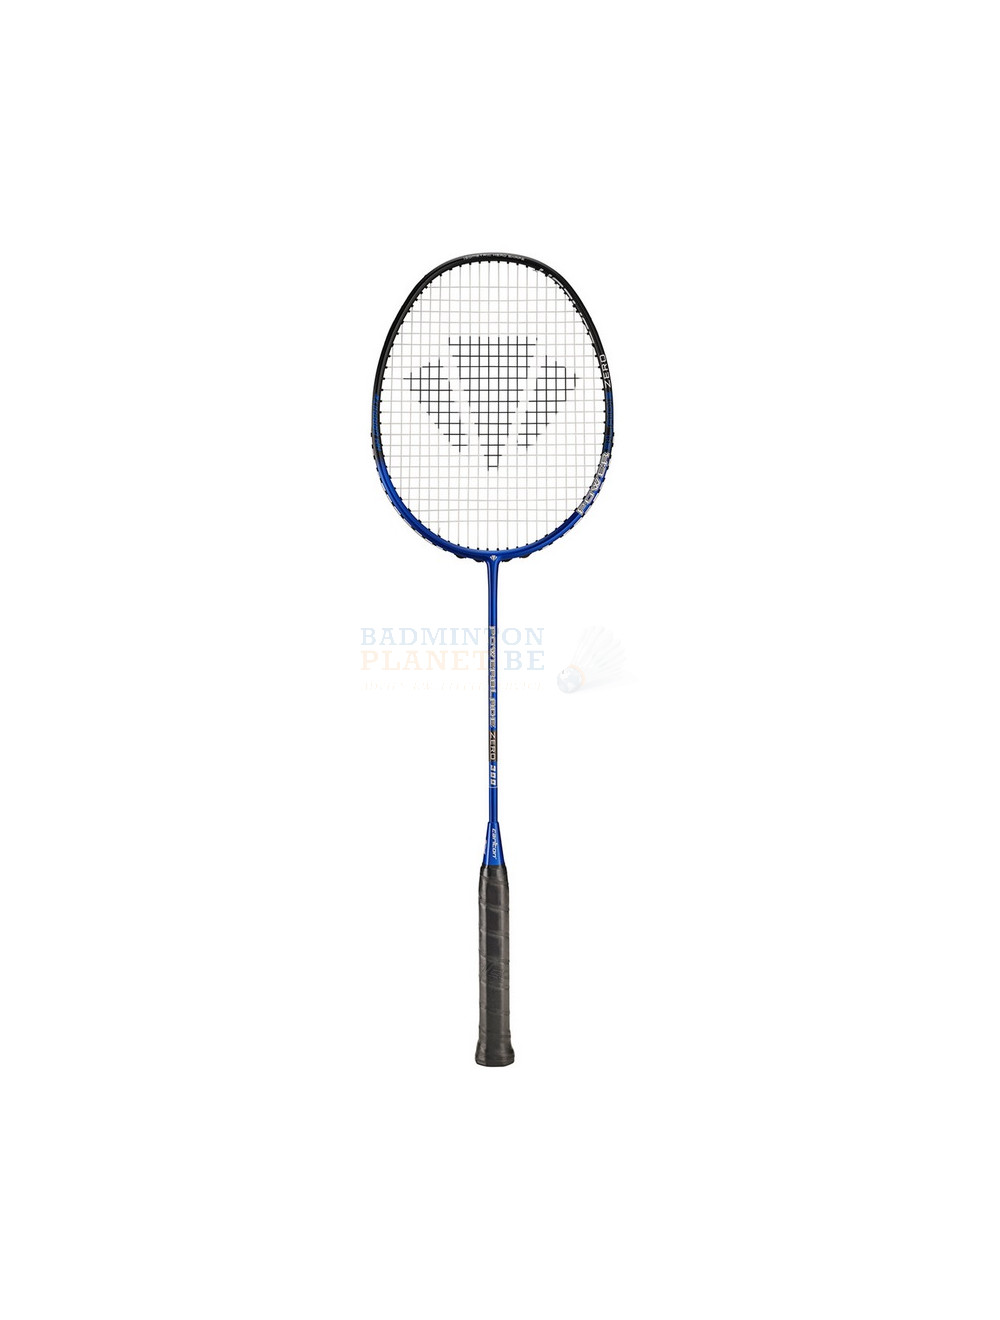 Schouderophalend Moreel onderwijs vasthoudend Carlton Powerblade Zero 300 badmintonracket kopen? - Badmintonplanet.be